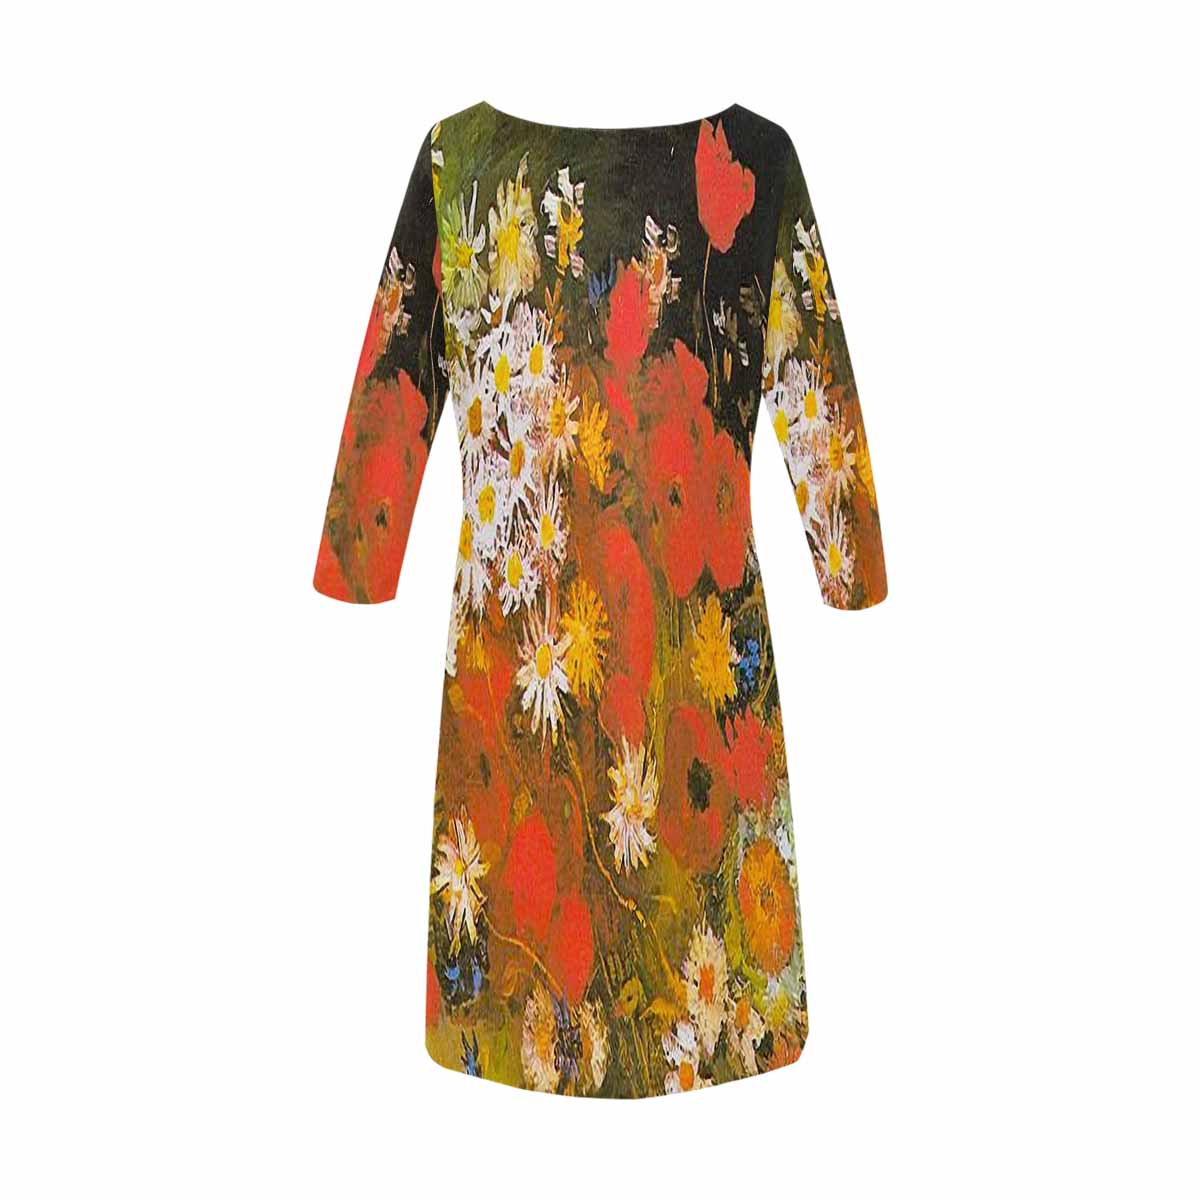 Vintage floral loose dress, XS to 3X plus size, model D29532 Design 60